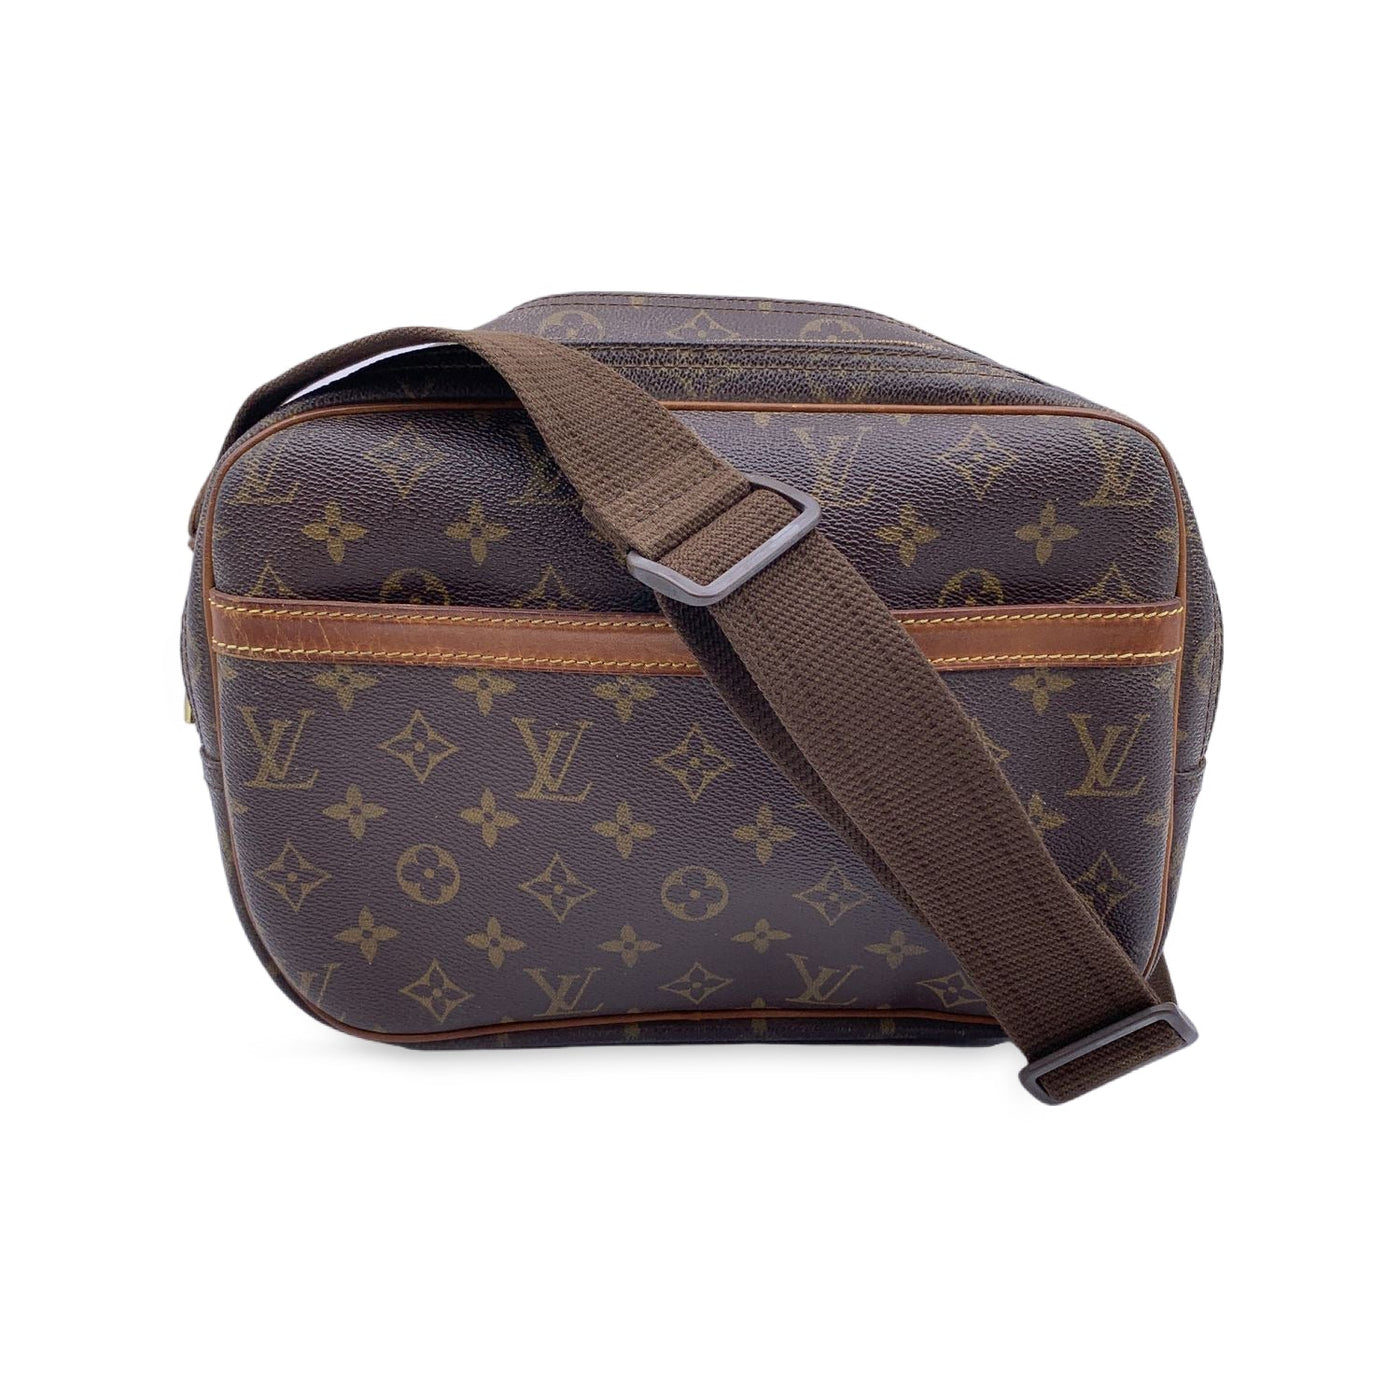 Louis Vuitton Reporter PM - Good or Bag